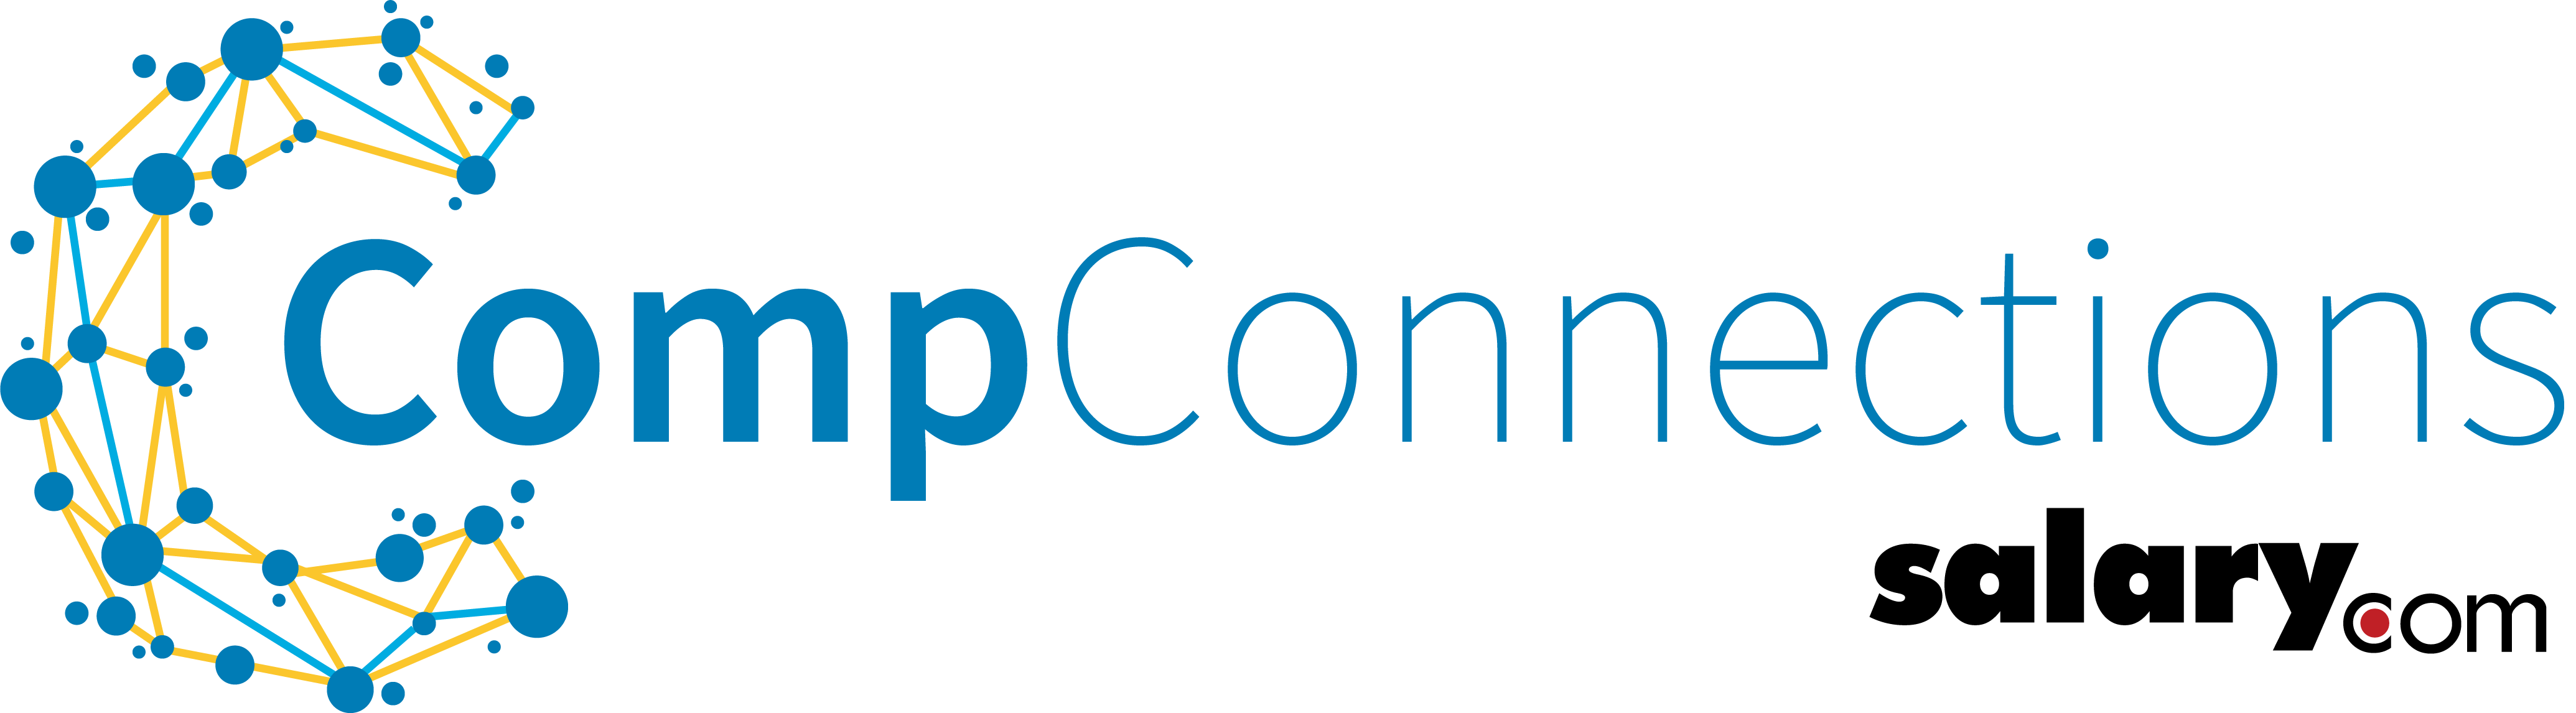 Salary.com Logo - Salary.com Enhances CompConnections Community with New Events ...